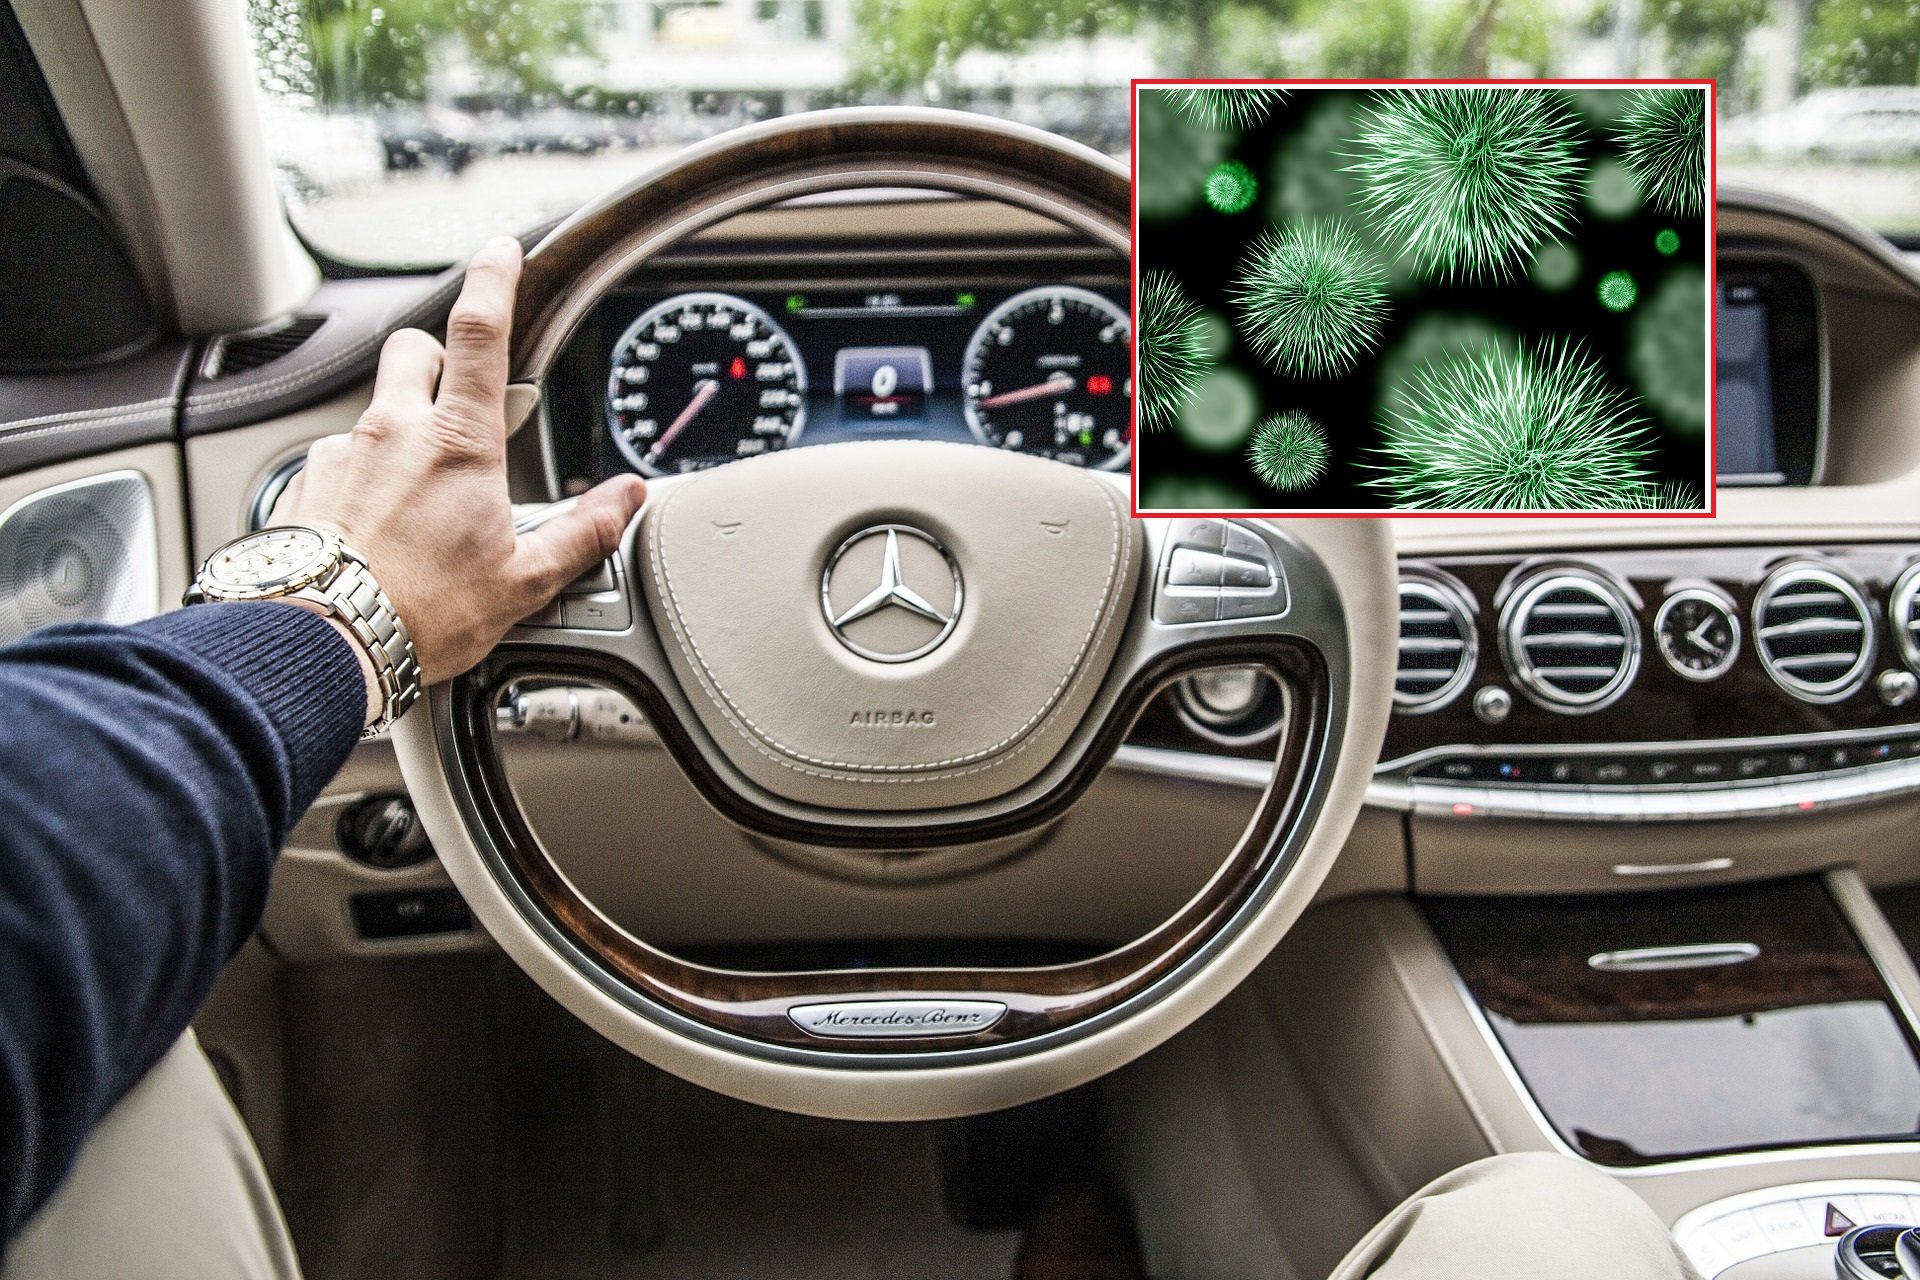 V interiéru používaných automobilů se může nacházet velké množství bakterií